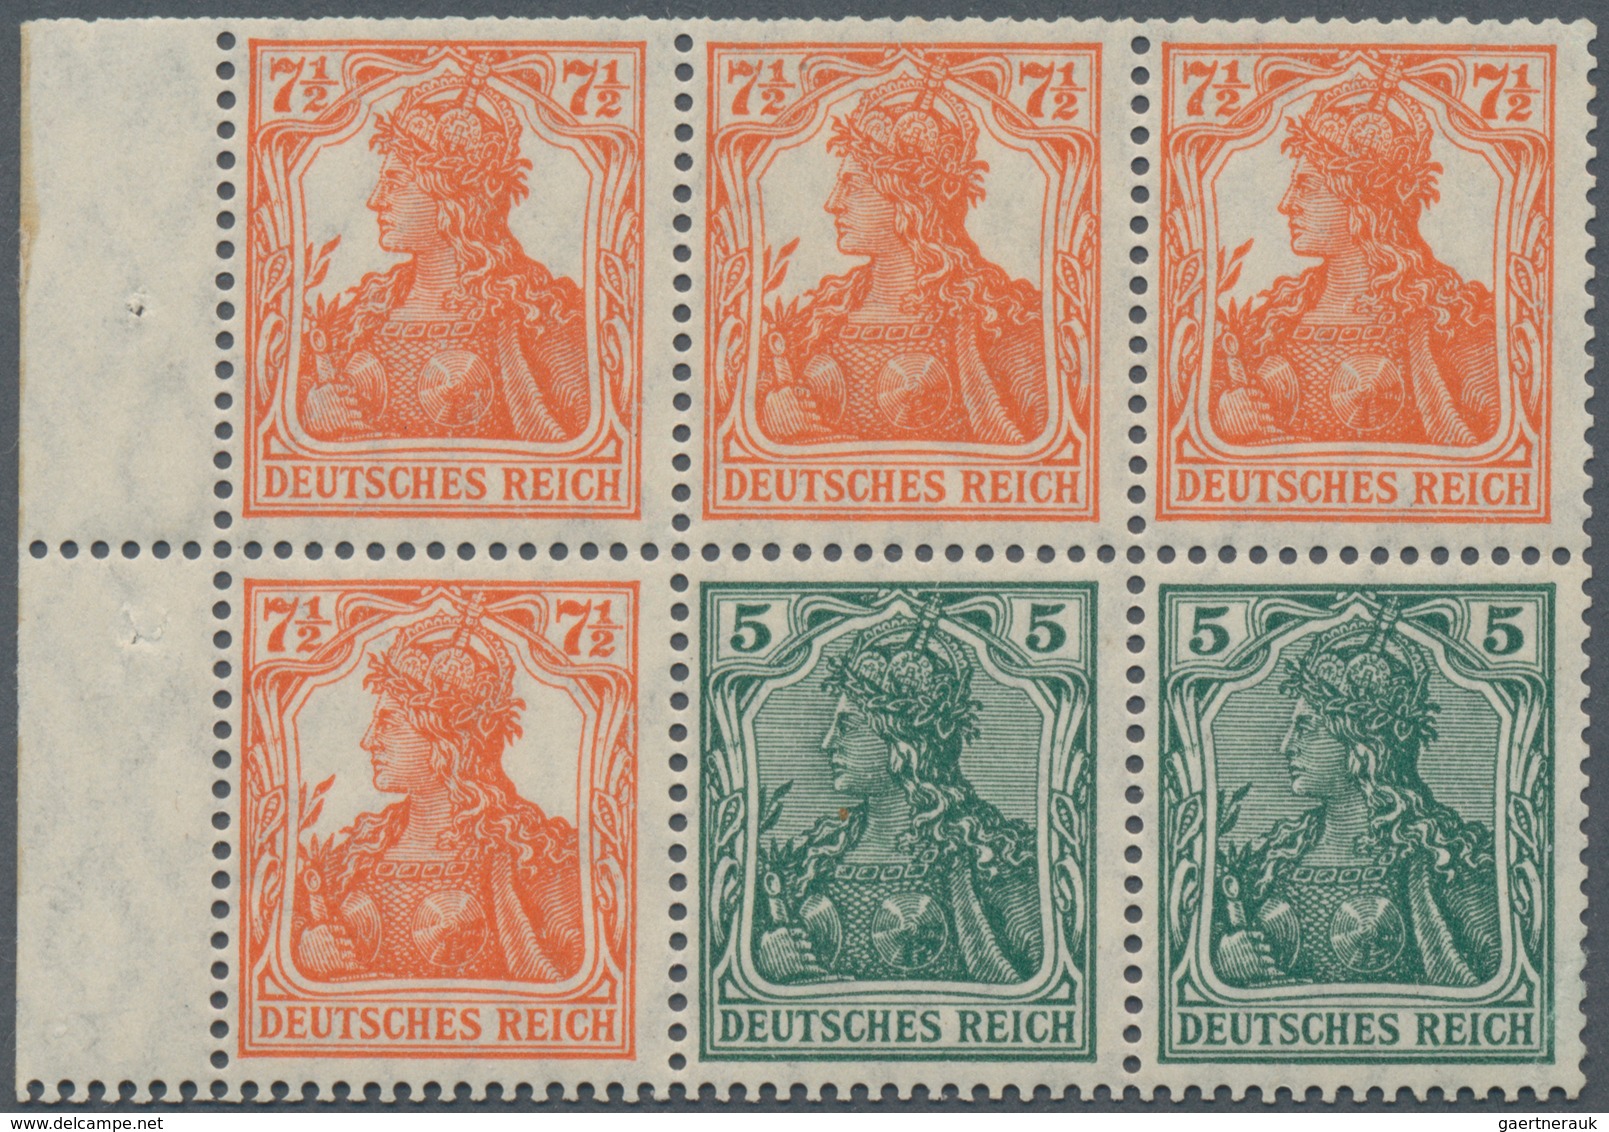 Deutsches Reich - Markenheftchenblätter: 1918, Heftchenblatt 5 + 7 ½ Pfg. Germania Postfrisch, Durch - Markenheftchen